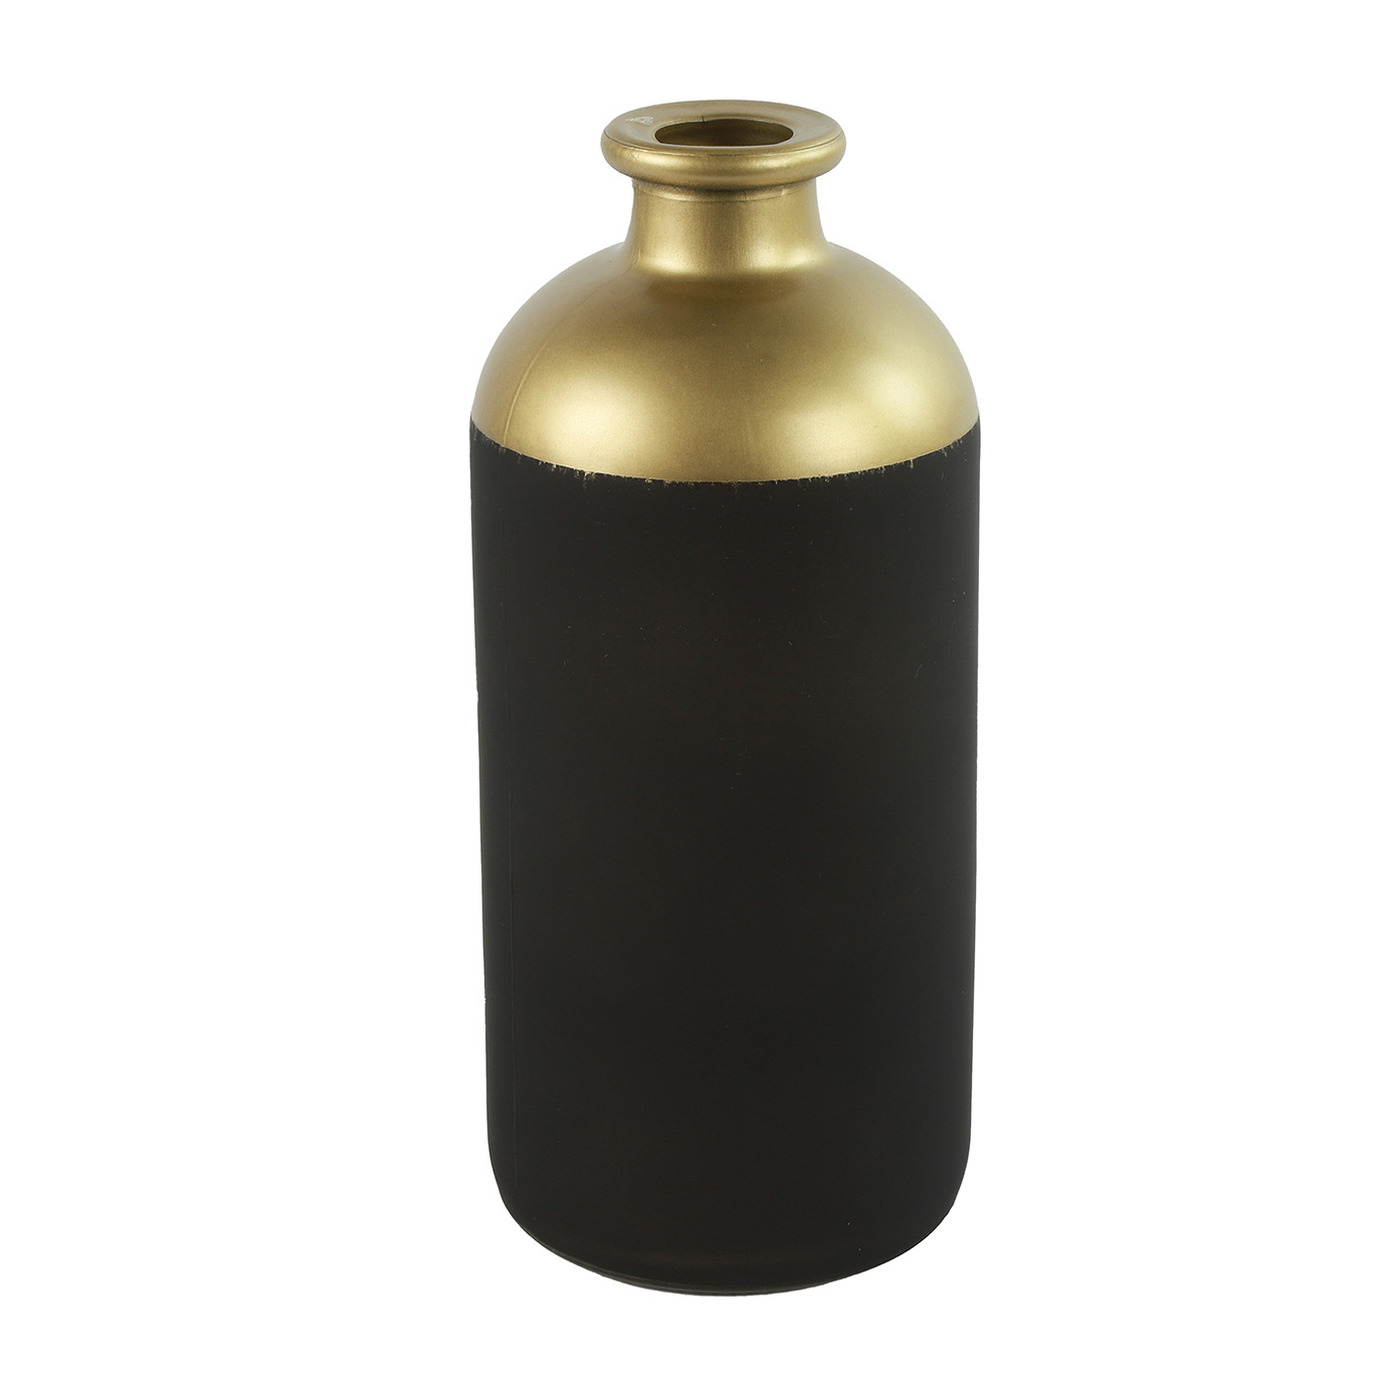 Countryfield Bloemen of deco vaas - zwart/goud - glas - luxe fles vorm - D11 x H25 cm -